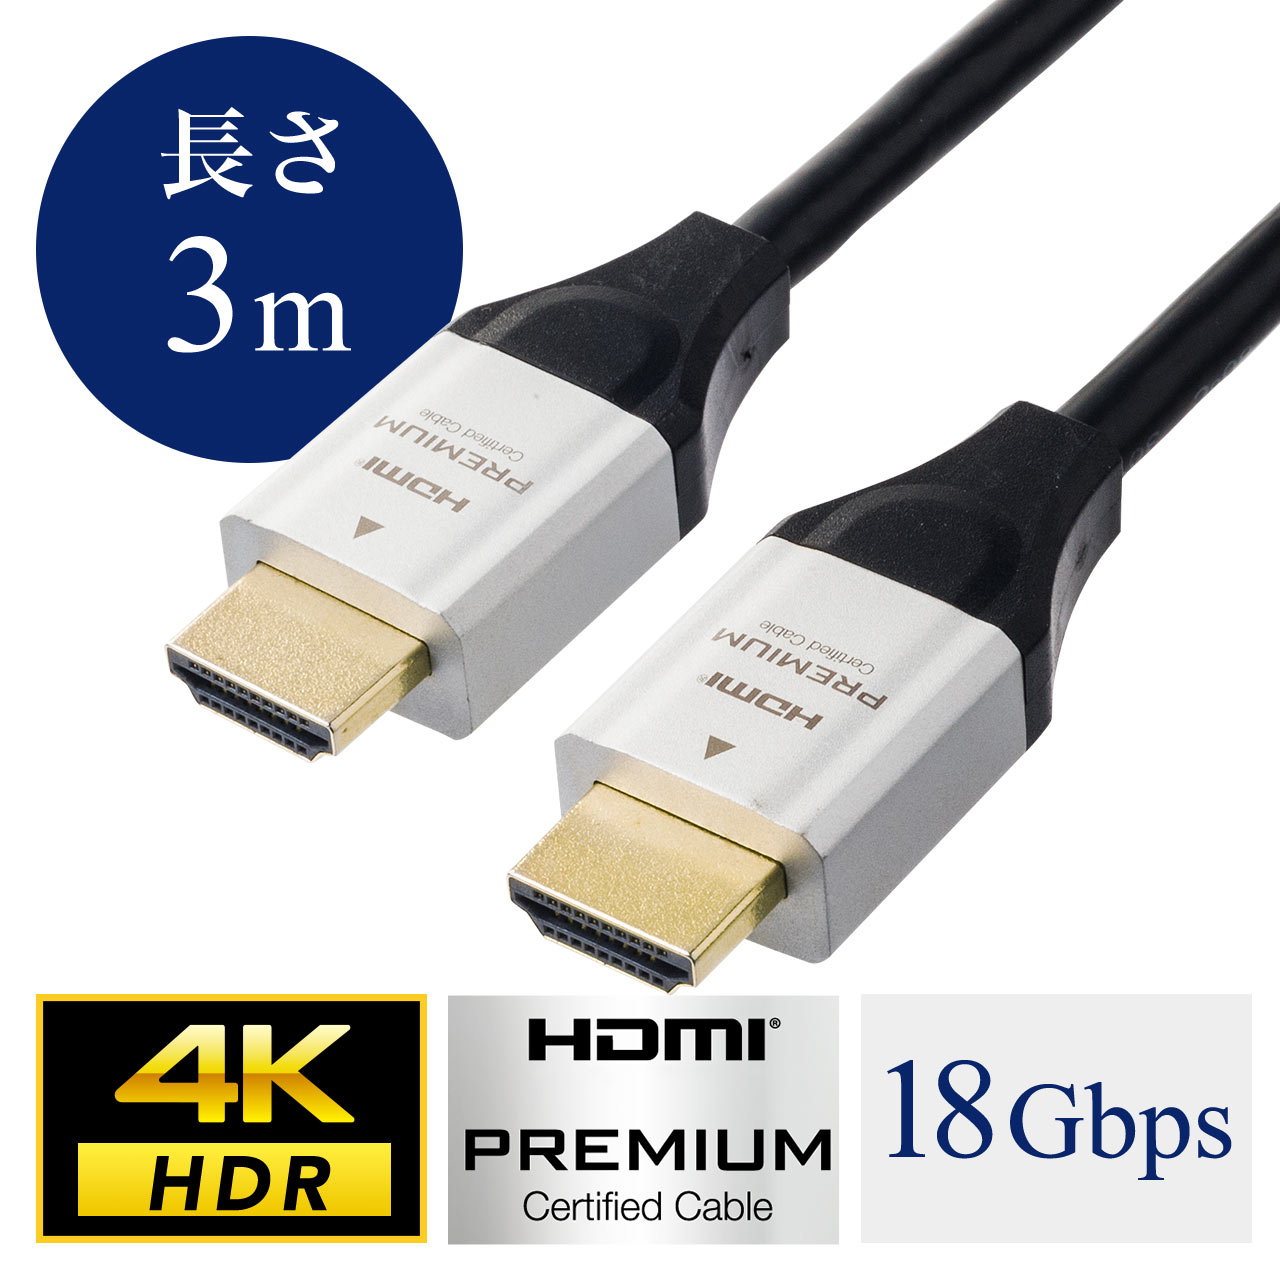 Belkin Mini HDMI to HDMIケーブル(6フィート) 並行輸入品 通販